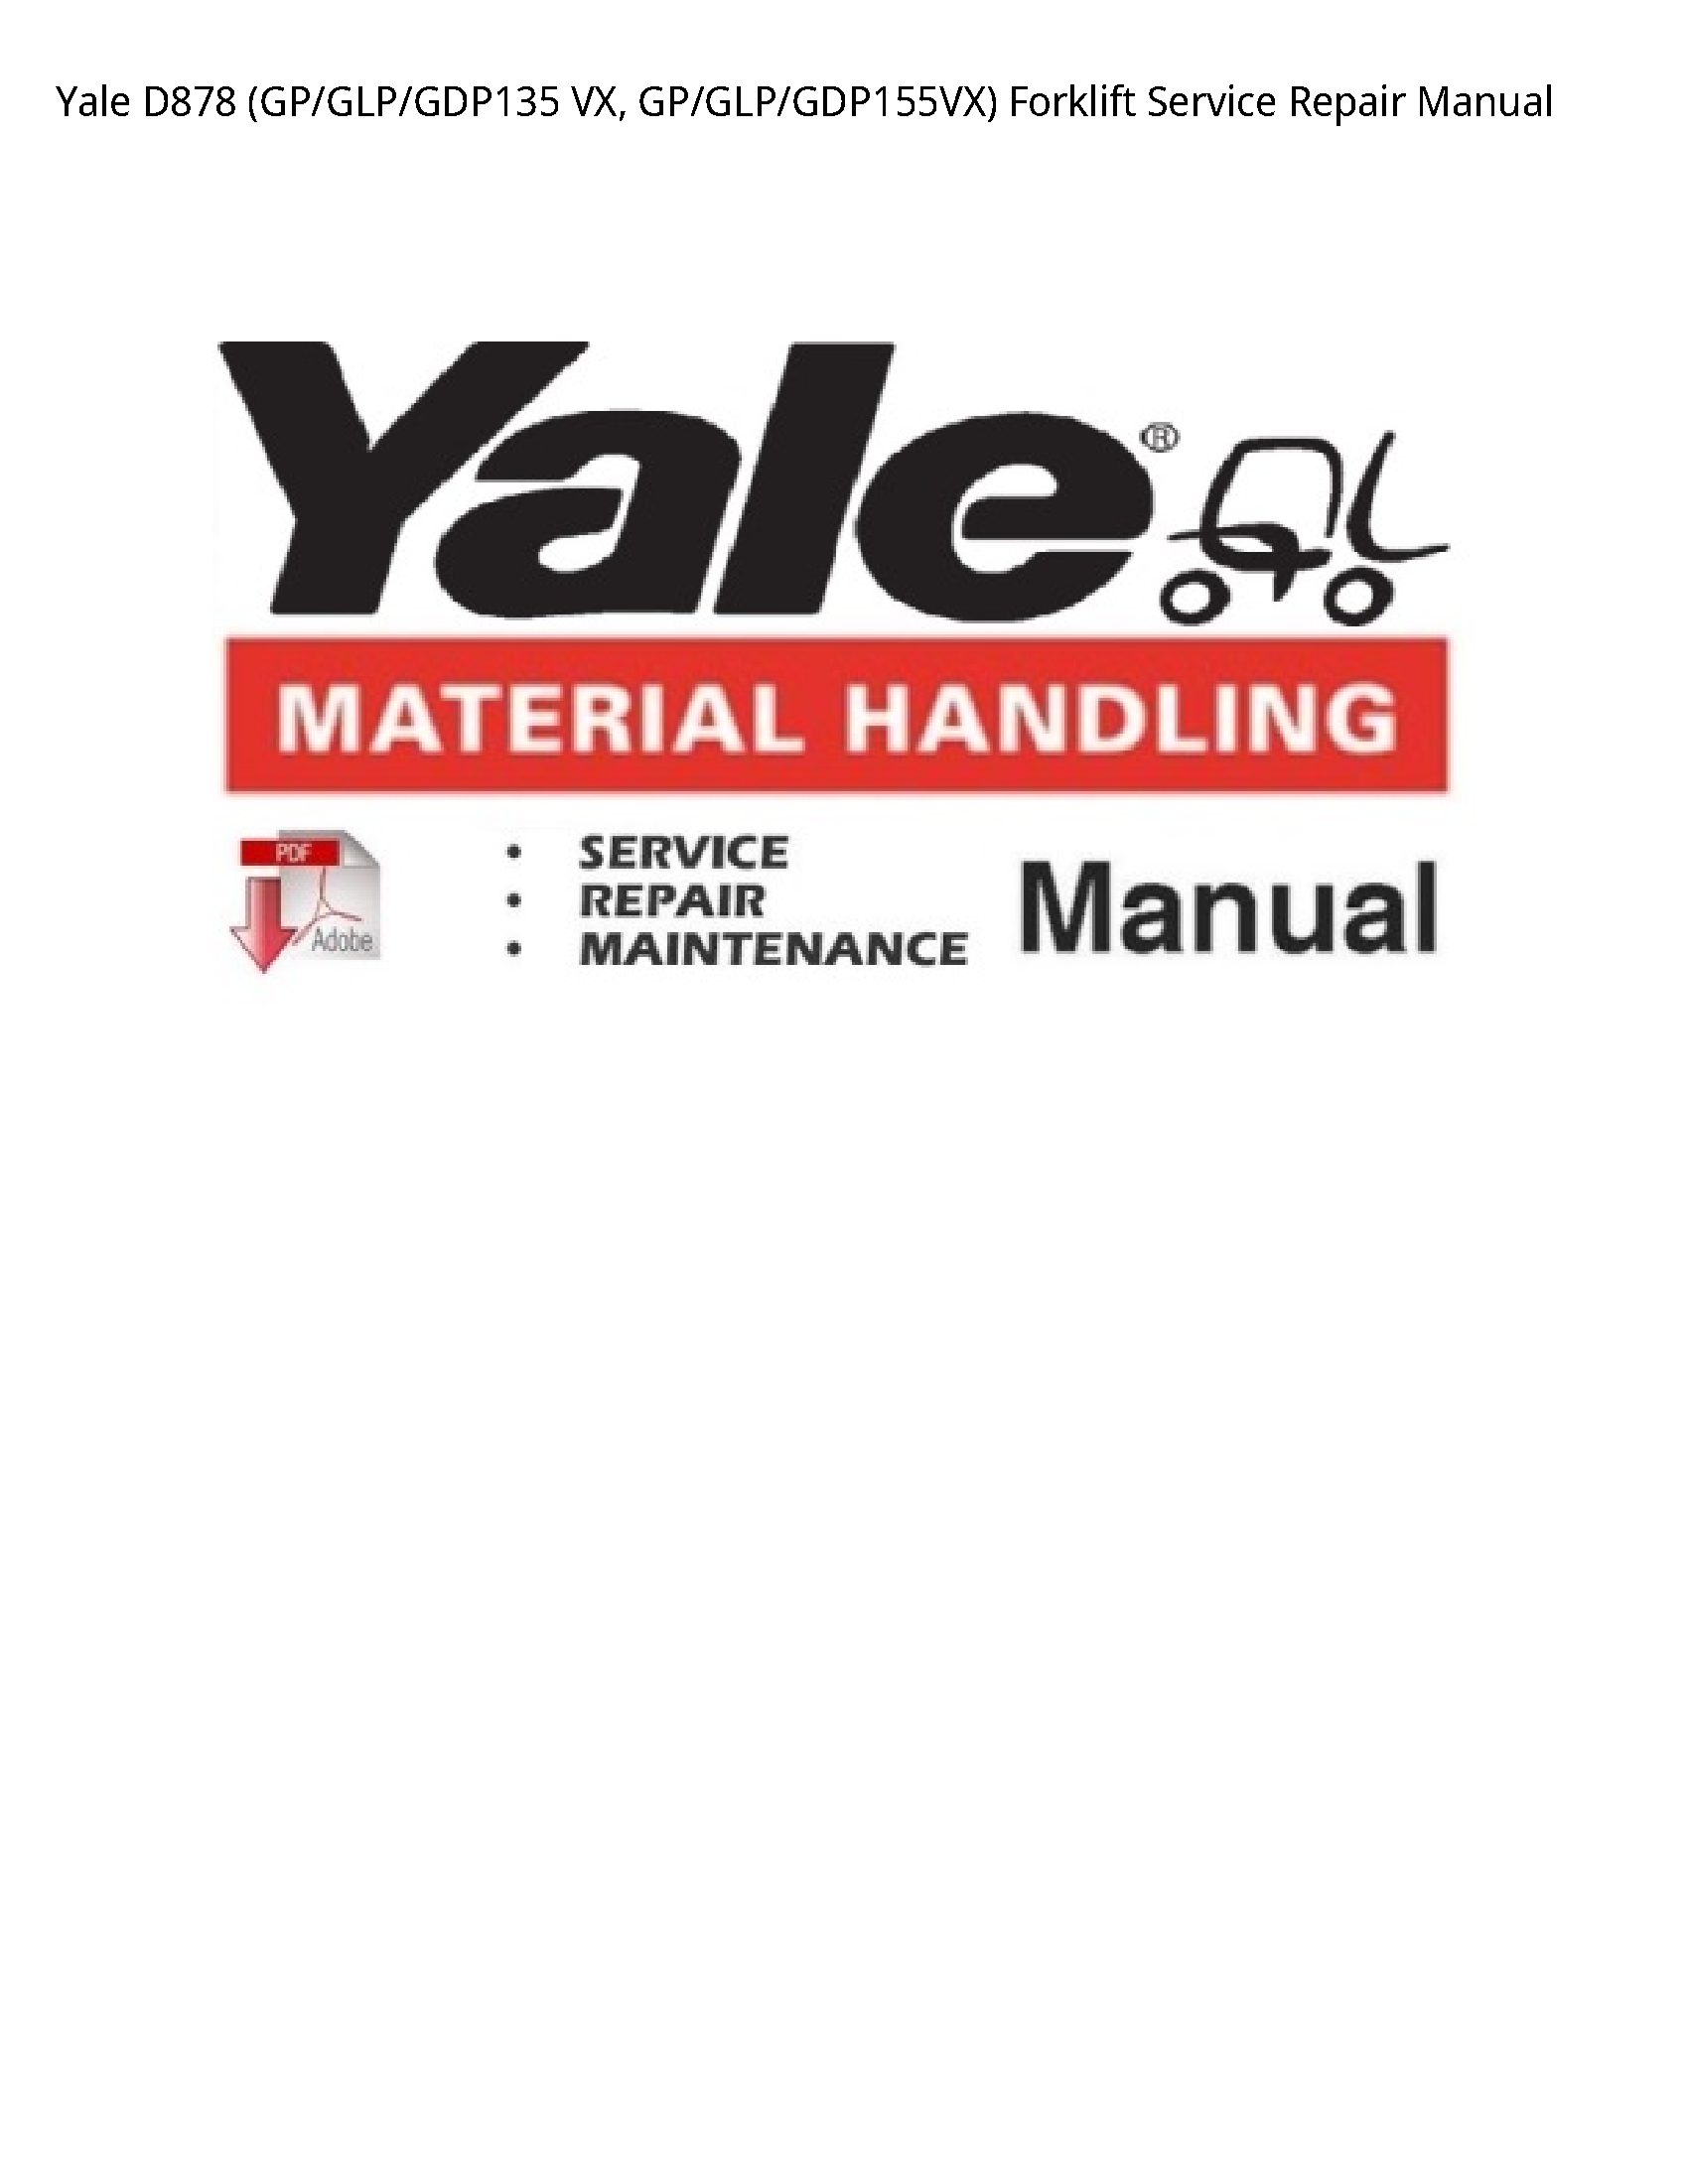 Yale D878 VX manual